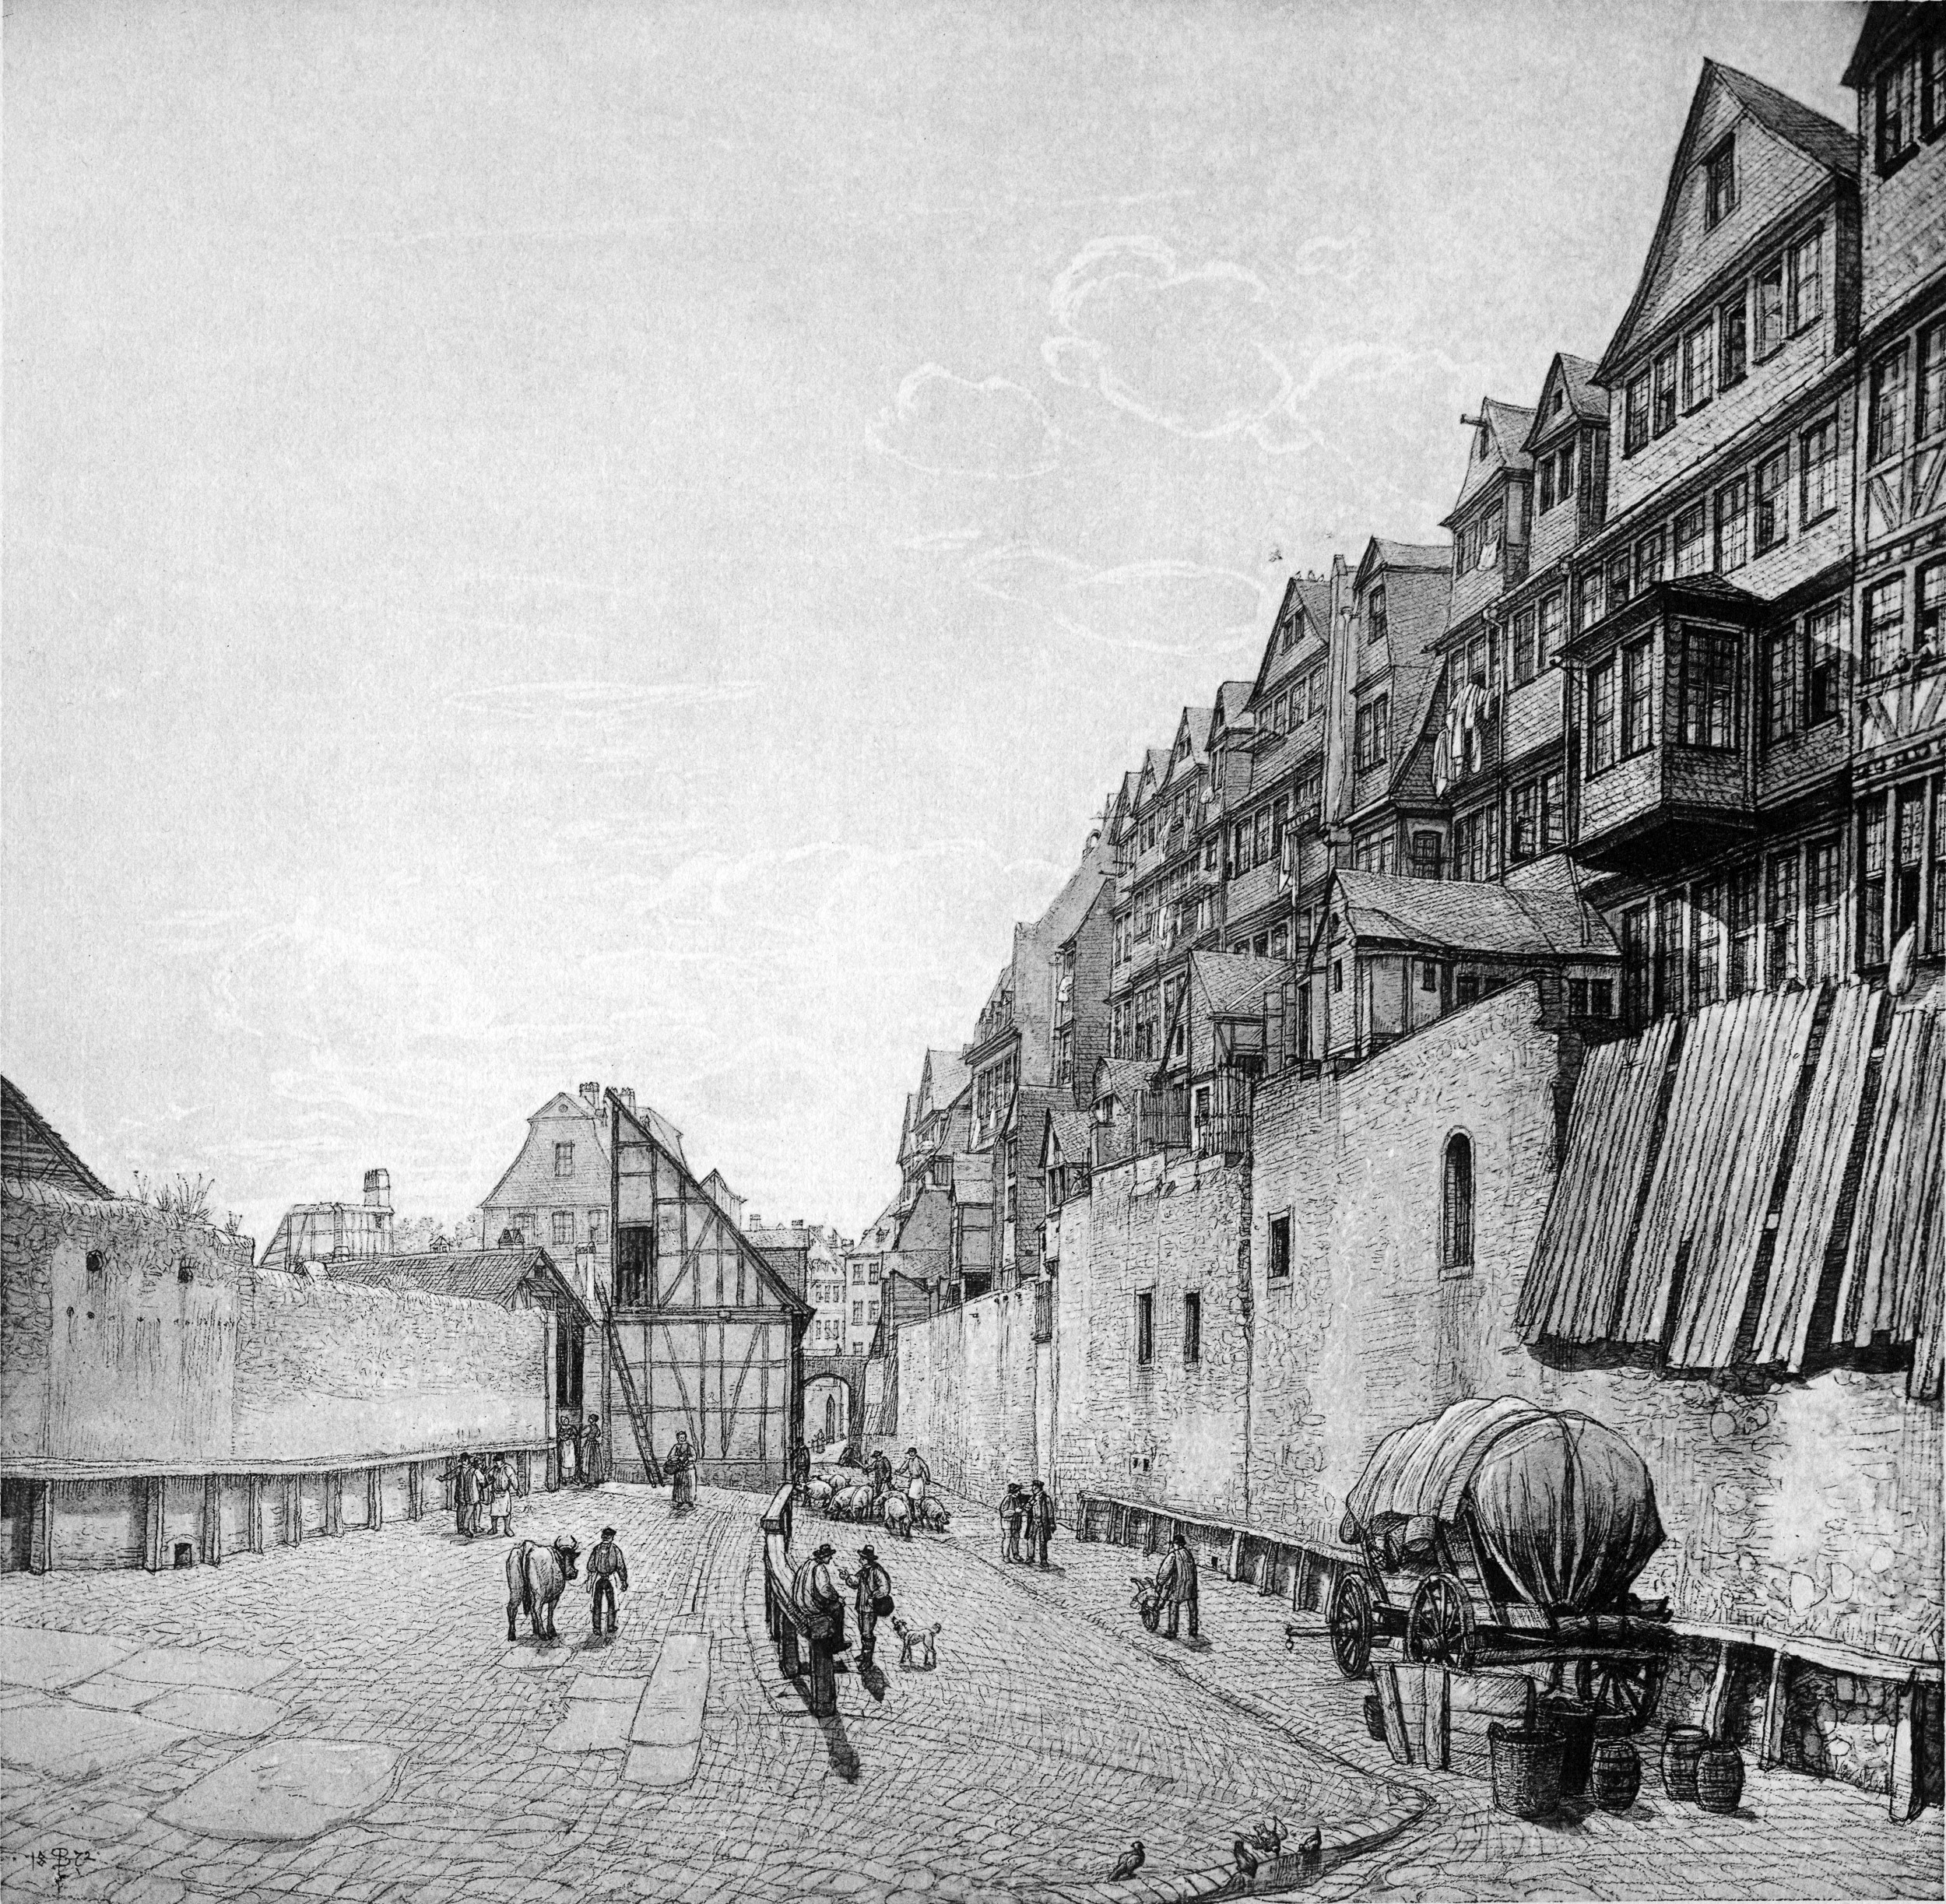 Frankfurt Am Main-Peter Becker-BAAF-007-Der Viehhof und die Hinterhaeuser der Judengasse nach Sueden gesehen-1872